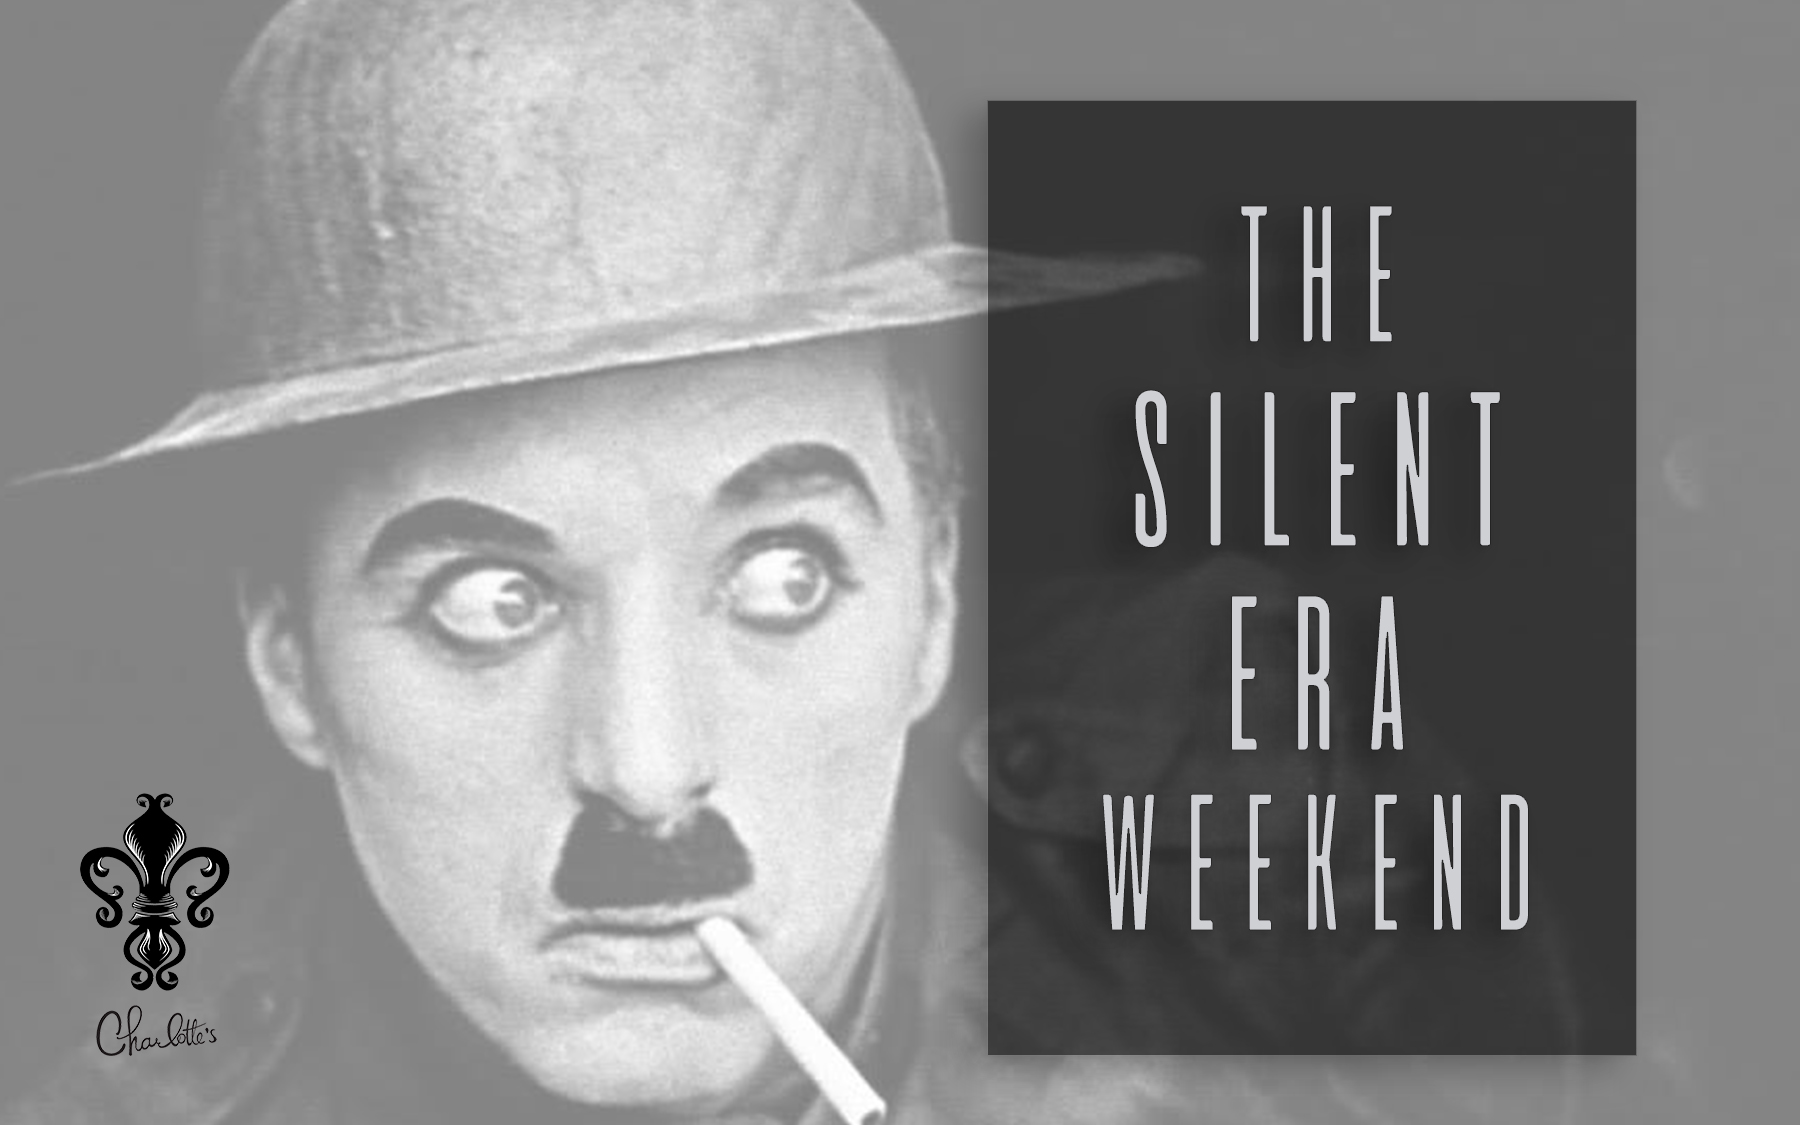 The Silent Era Weekend